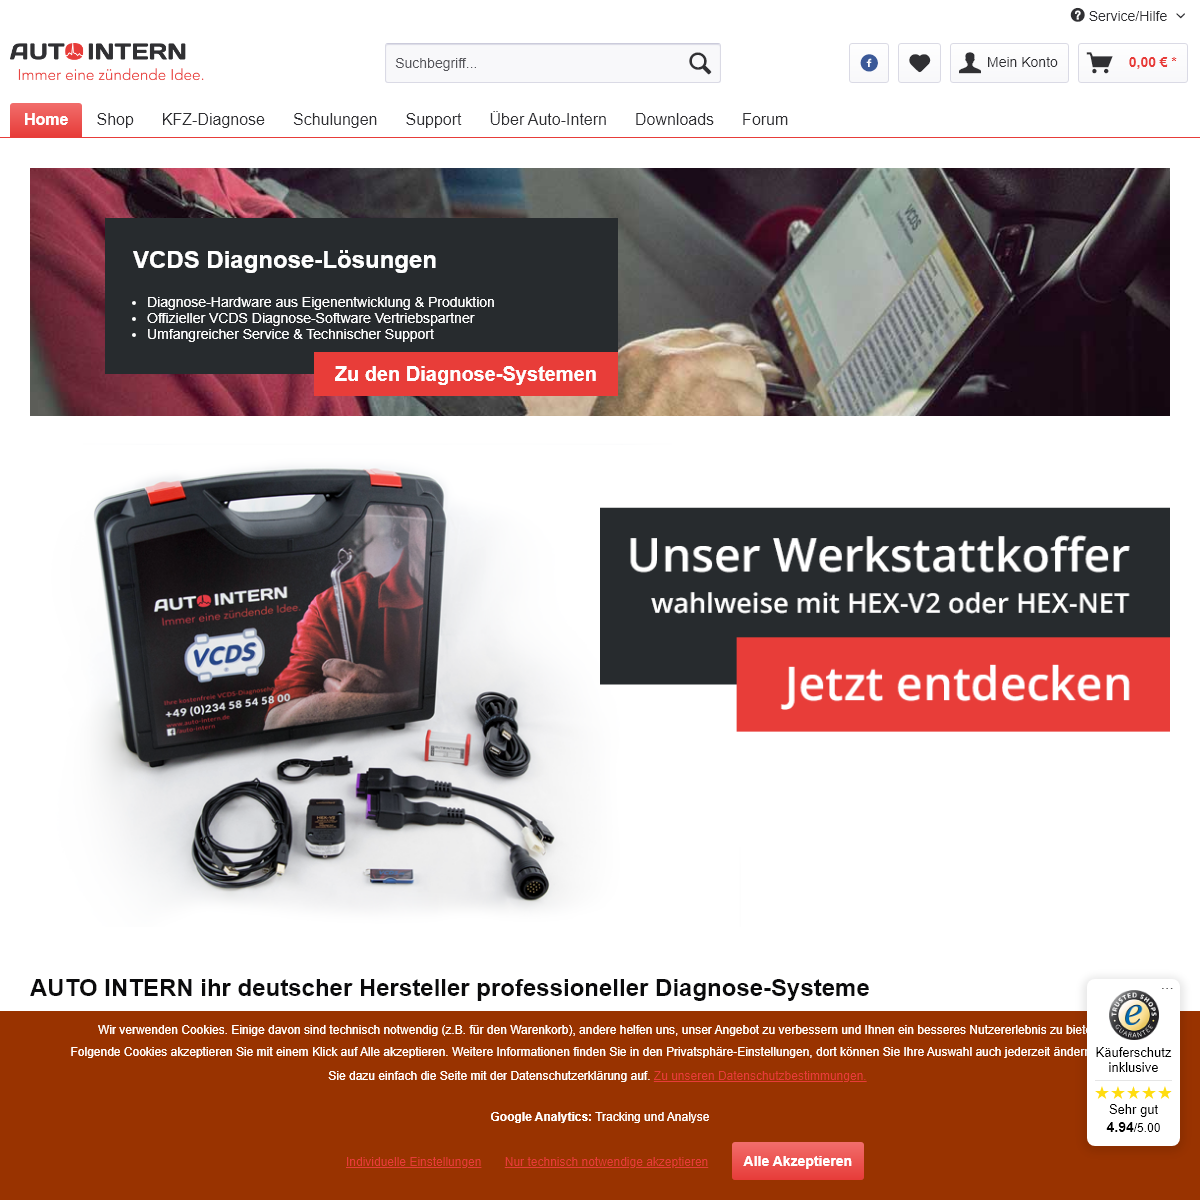 Auto-Intern - Der Diagnose-Shop - Schulungen - VCDS - HEX-V2 - HEX-NET - Support - Auto-Intern